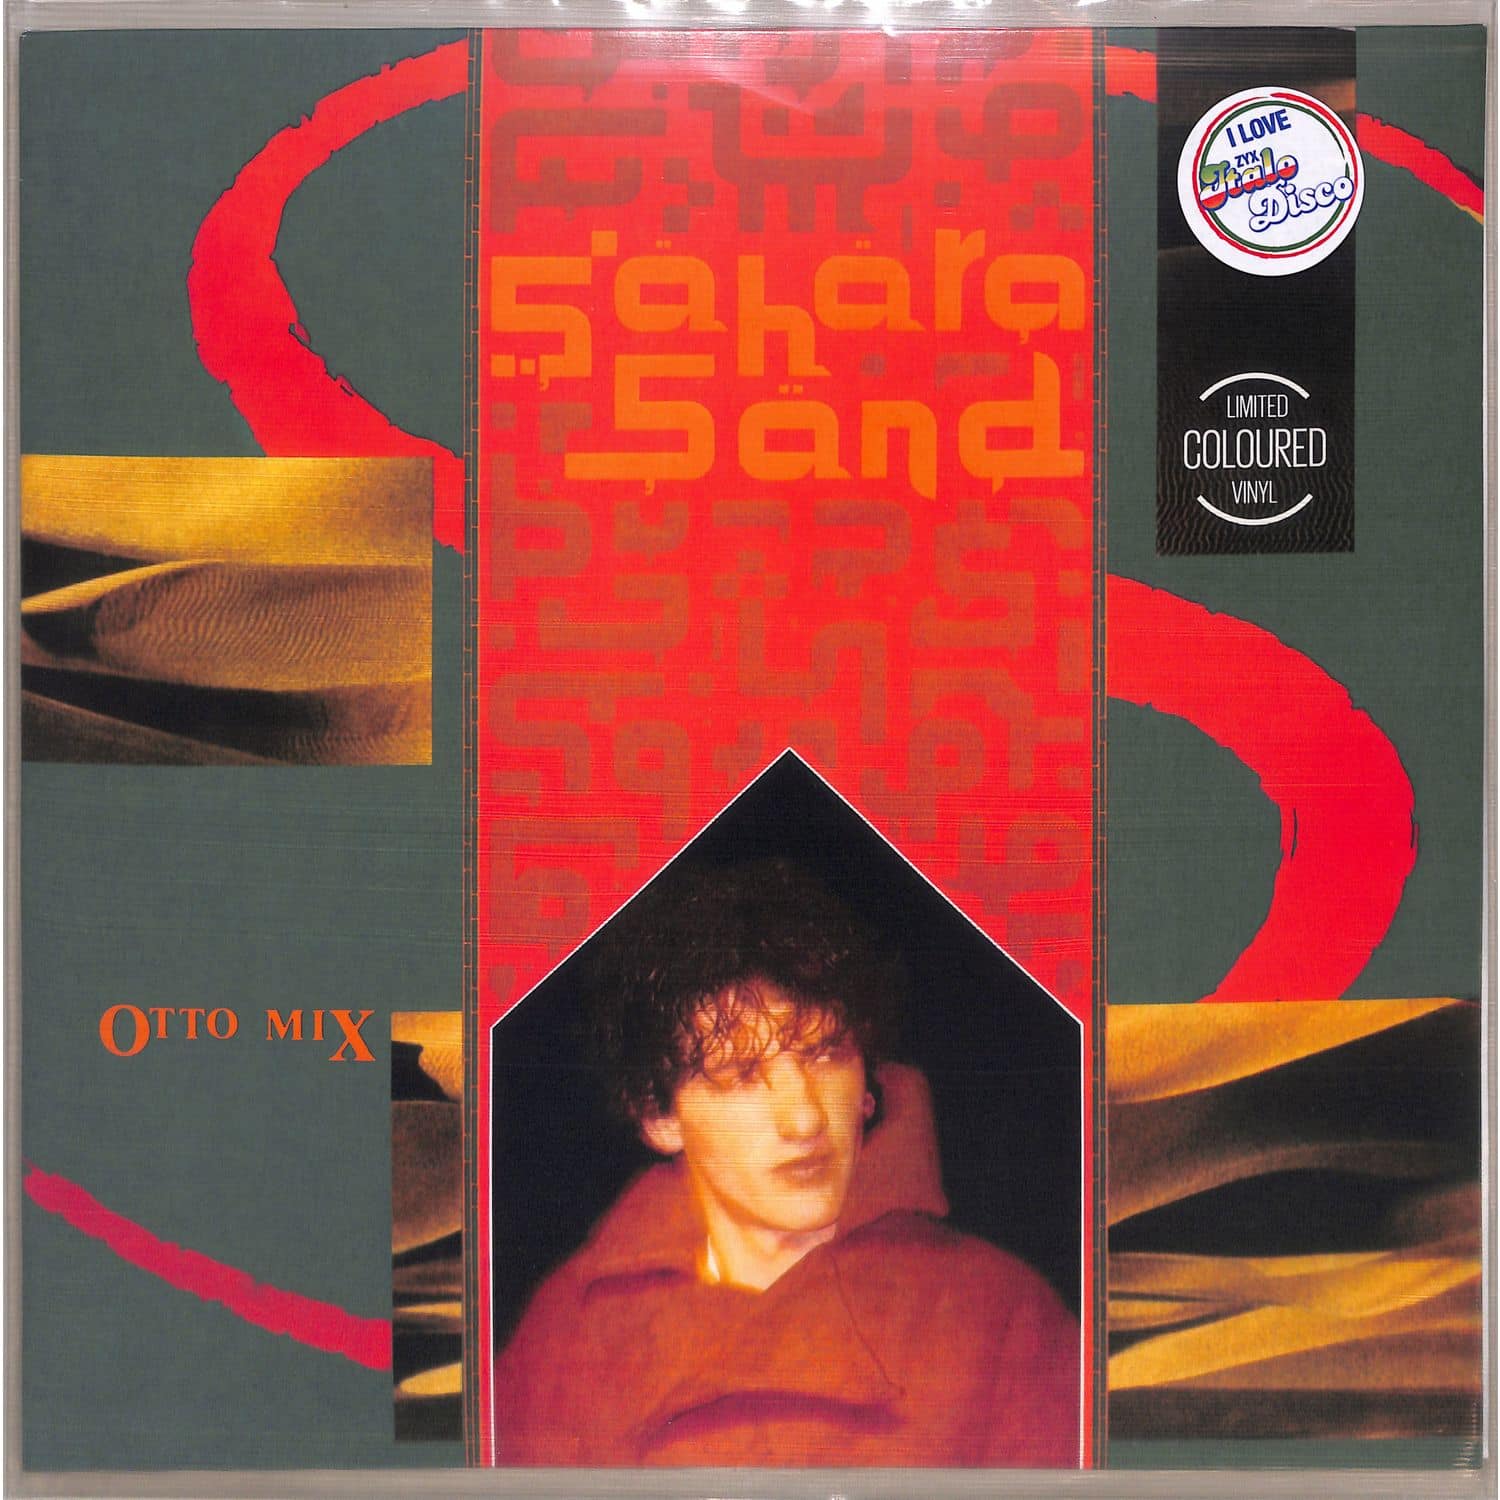 Otto Mix - SAHARA SAND